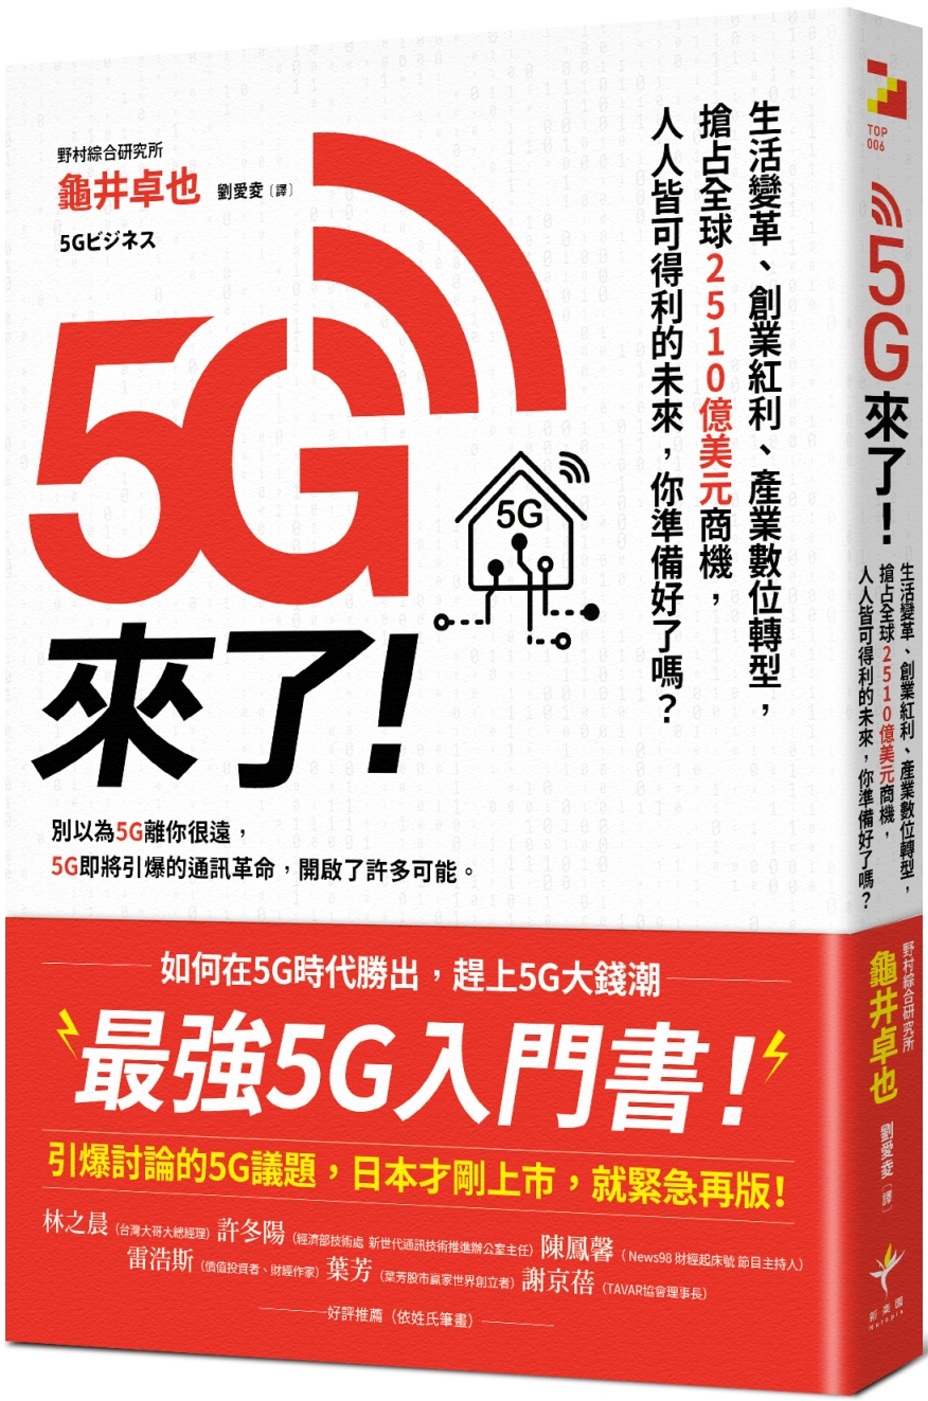 5G來了！：生活變革、創業紅利、產業數位轉型，搶占全球251...